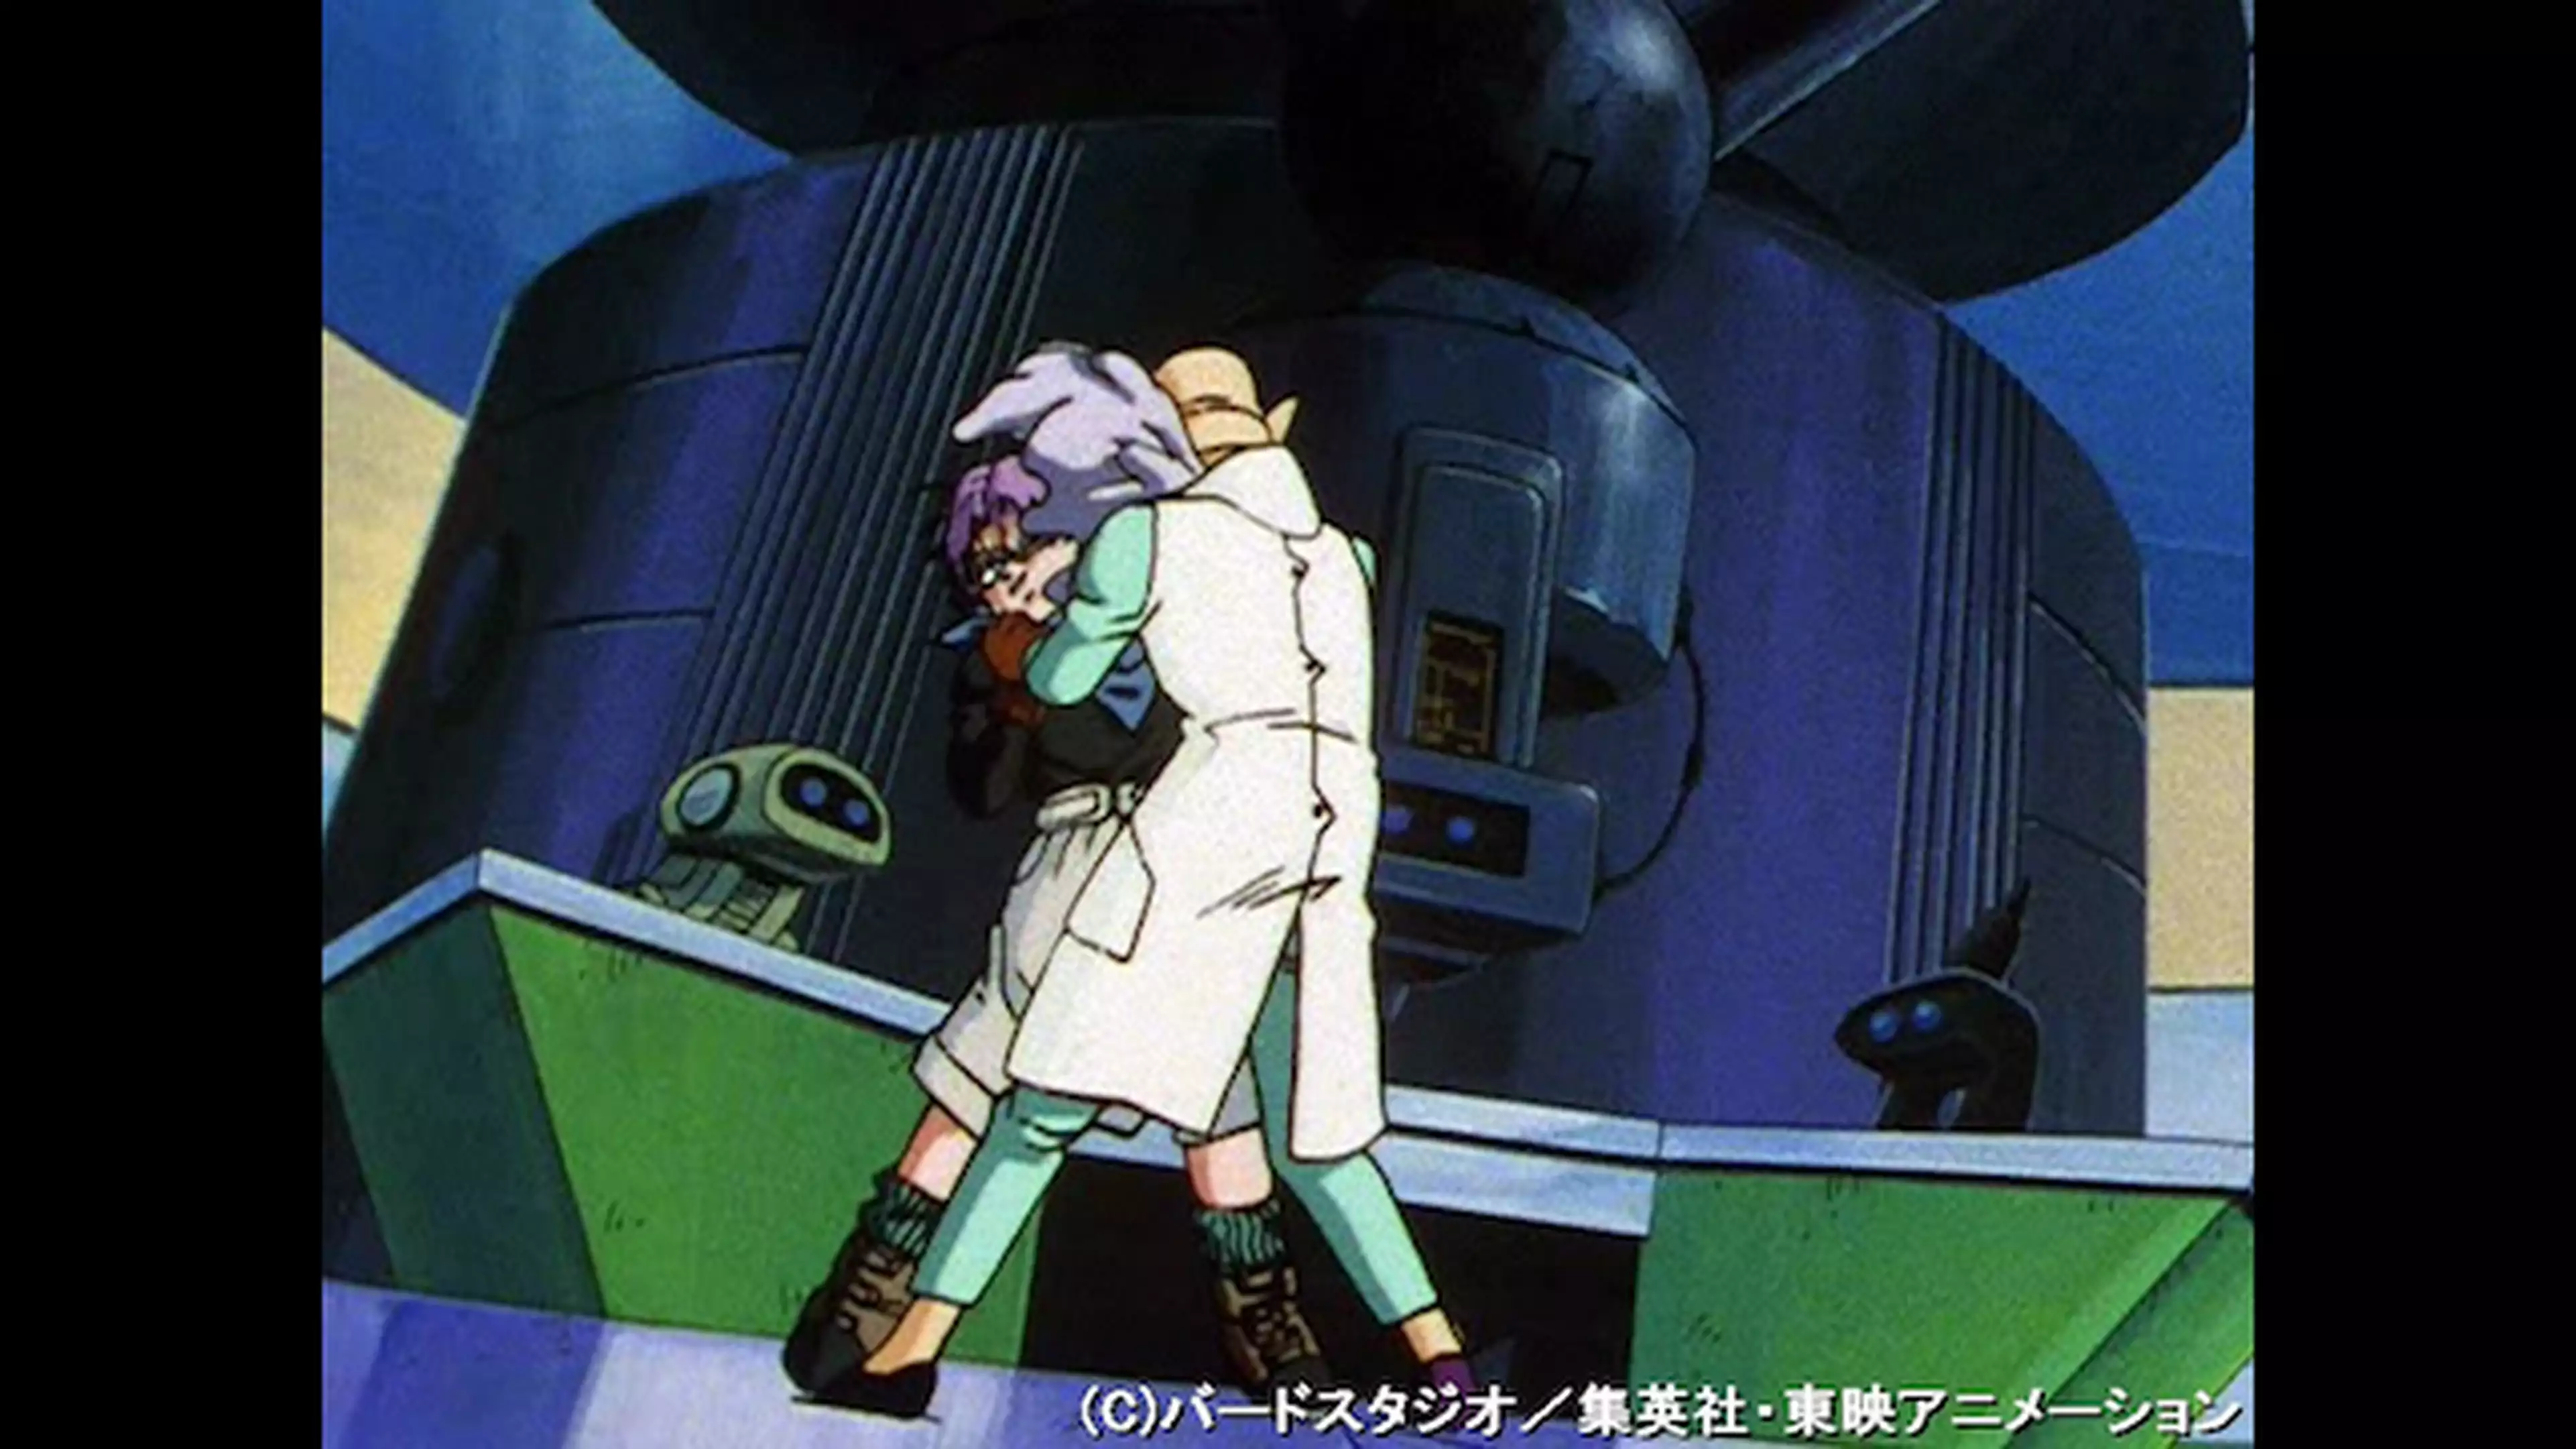 ドラゴンボールgt 第24話 ベビー逆襲 狙われたサイヤ人 アニメ 1996年 の動画視聴 あらすじ U Next